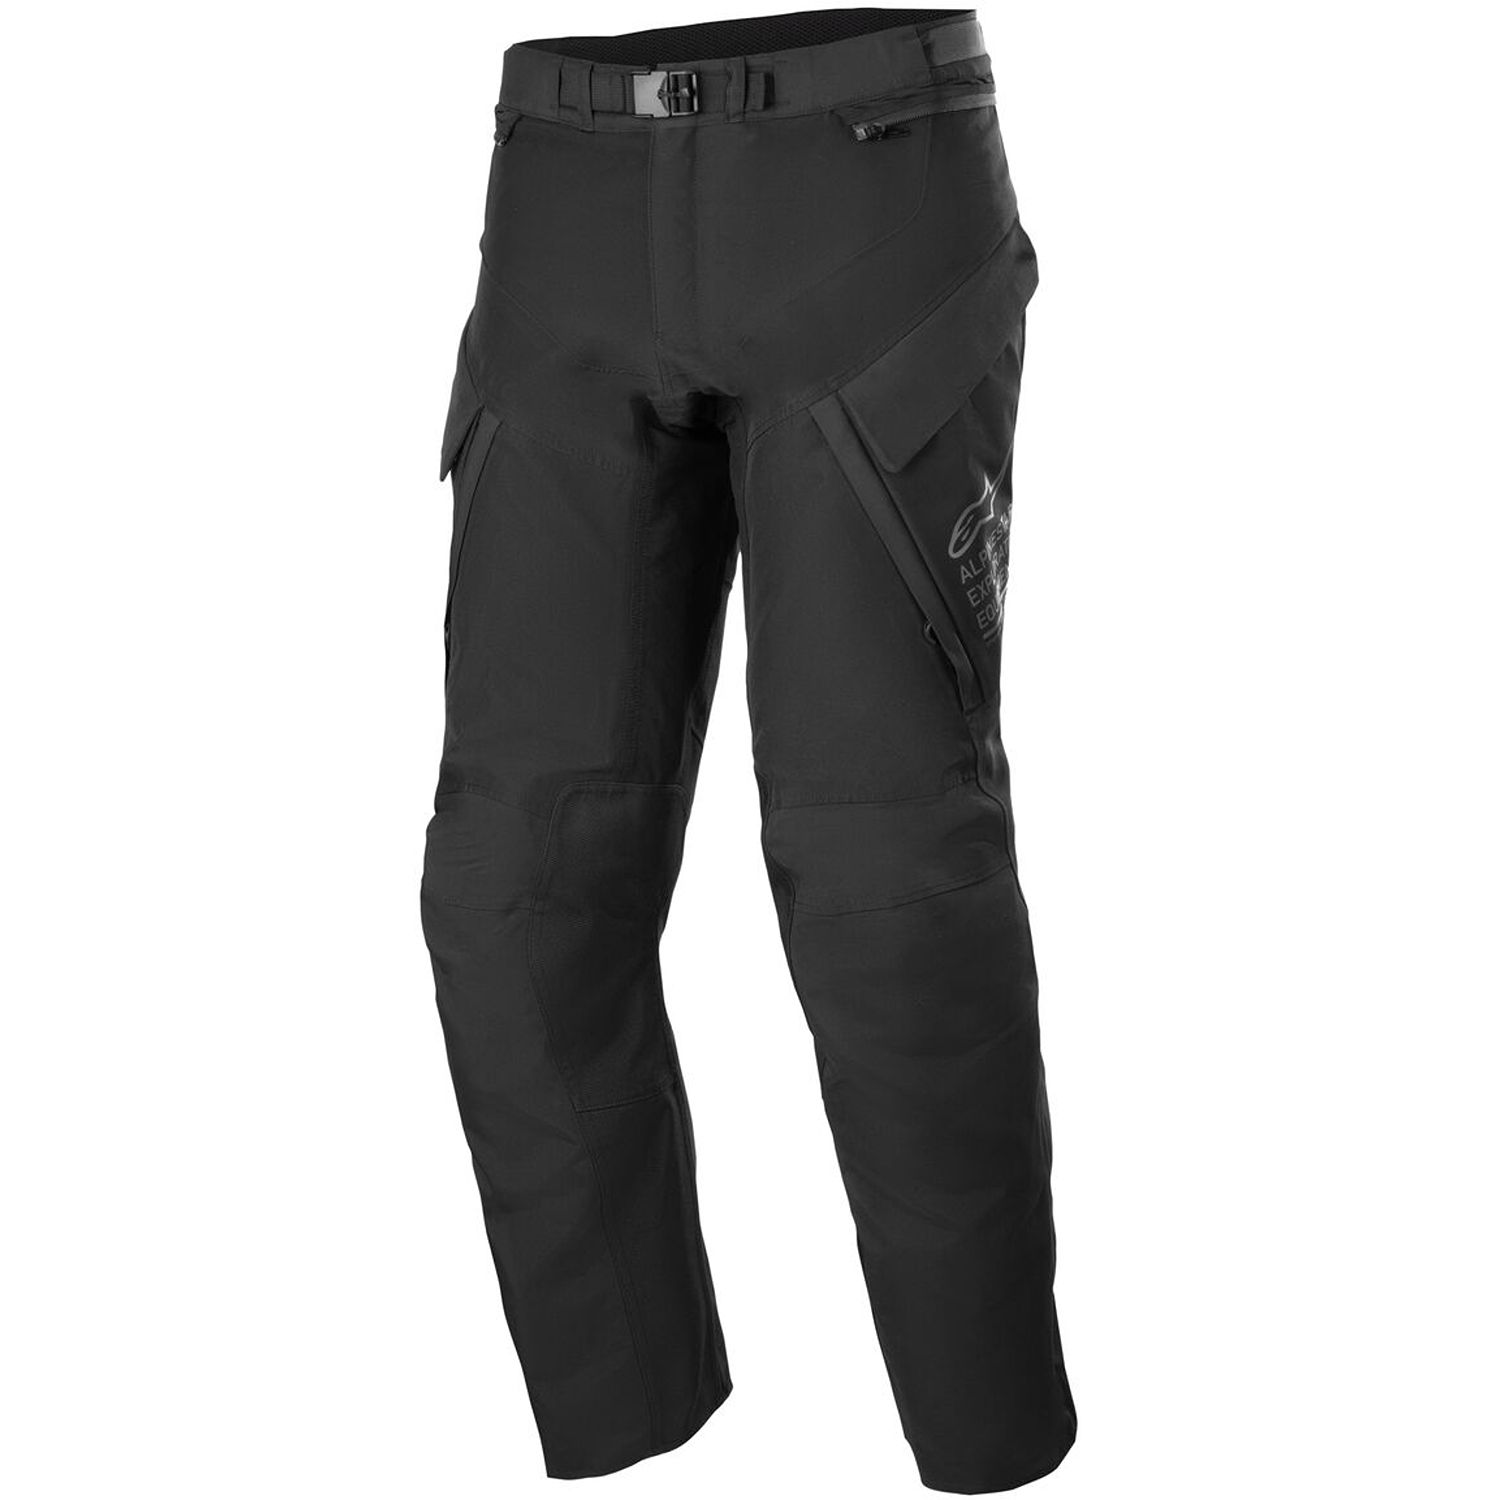 Image of Alpinestars ST-7 2L Gore-Tex Pants Black Dark Grey Size M ID 8059347249674